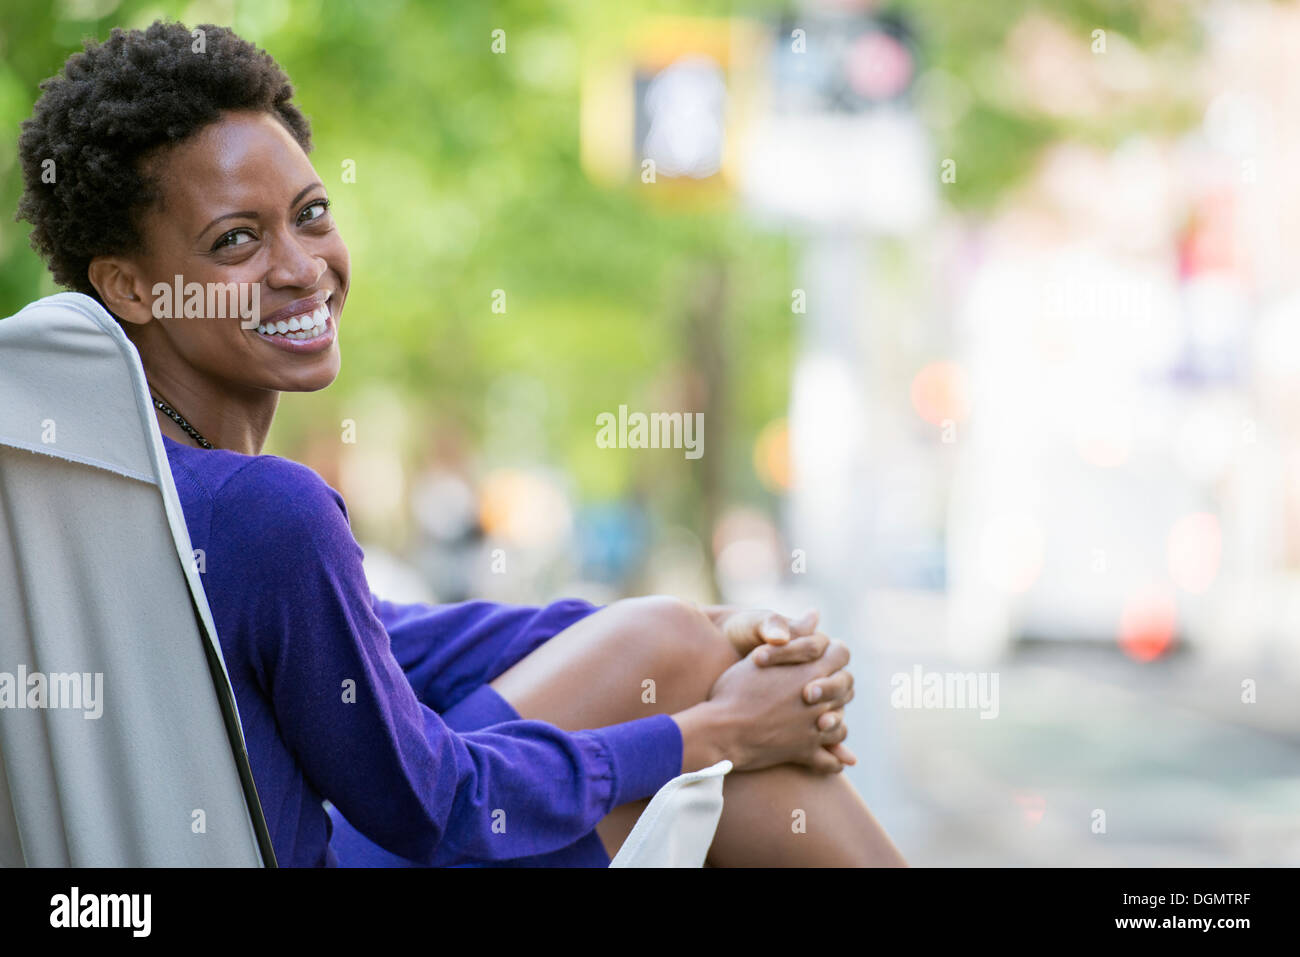 Città. Una donna in un vestito viola, seduta in una tela camping sedia, guardando sopra la sua spalla. Foto Stock